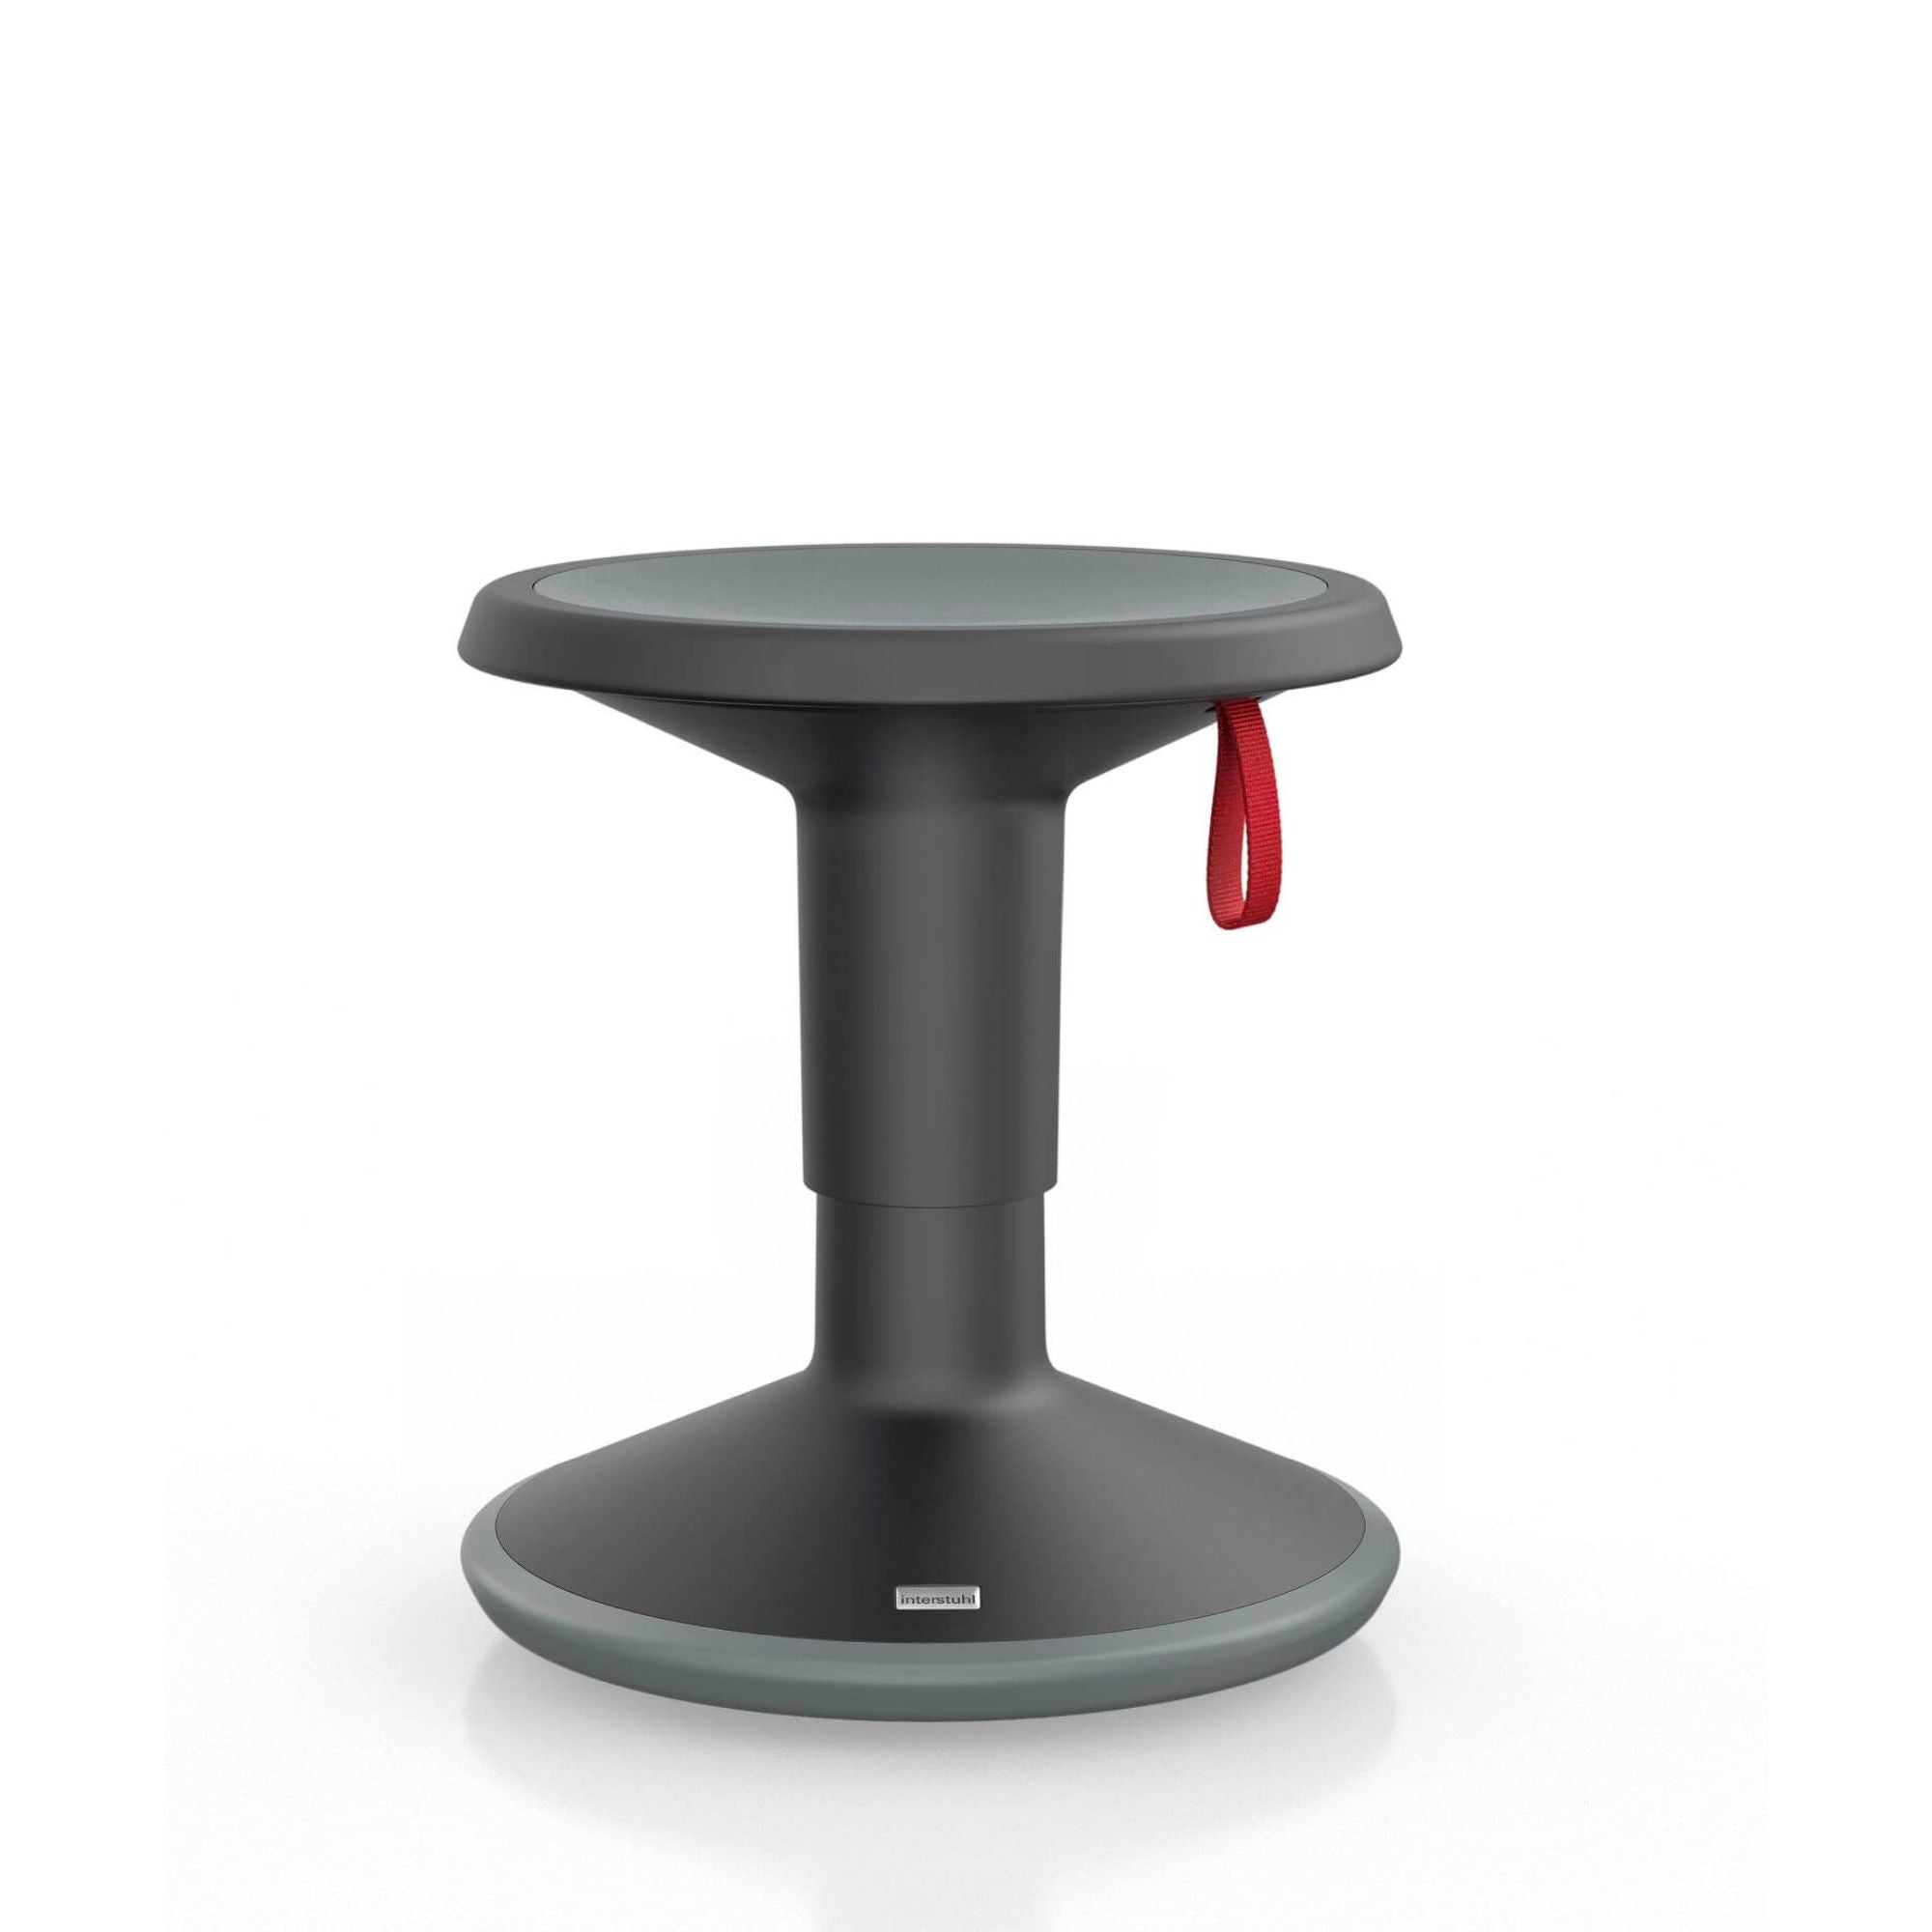 Upis1 Junior ergonomic stool, space black